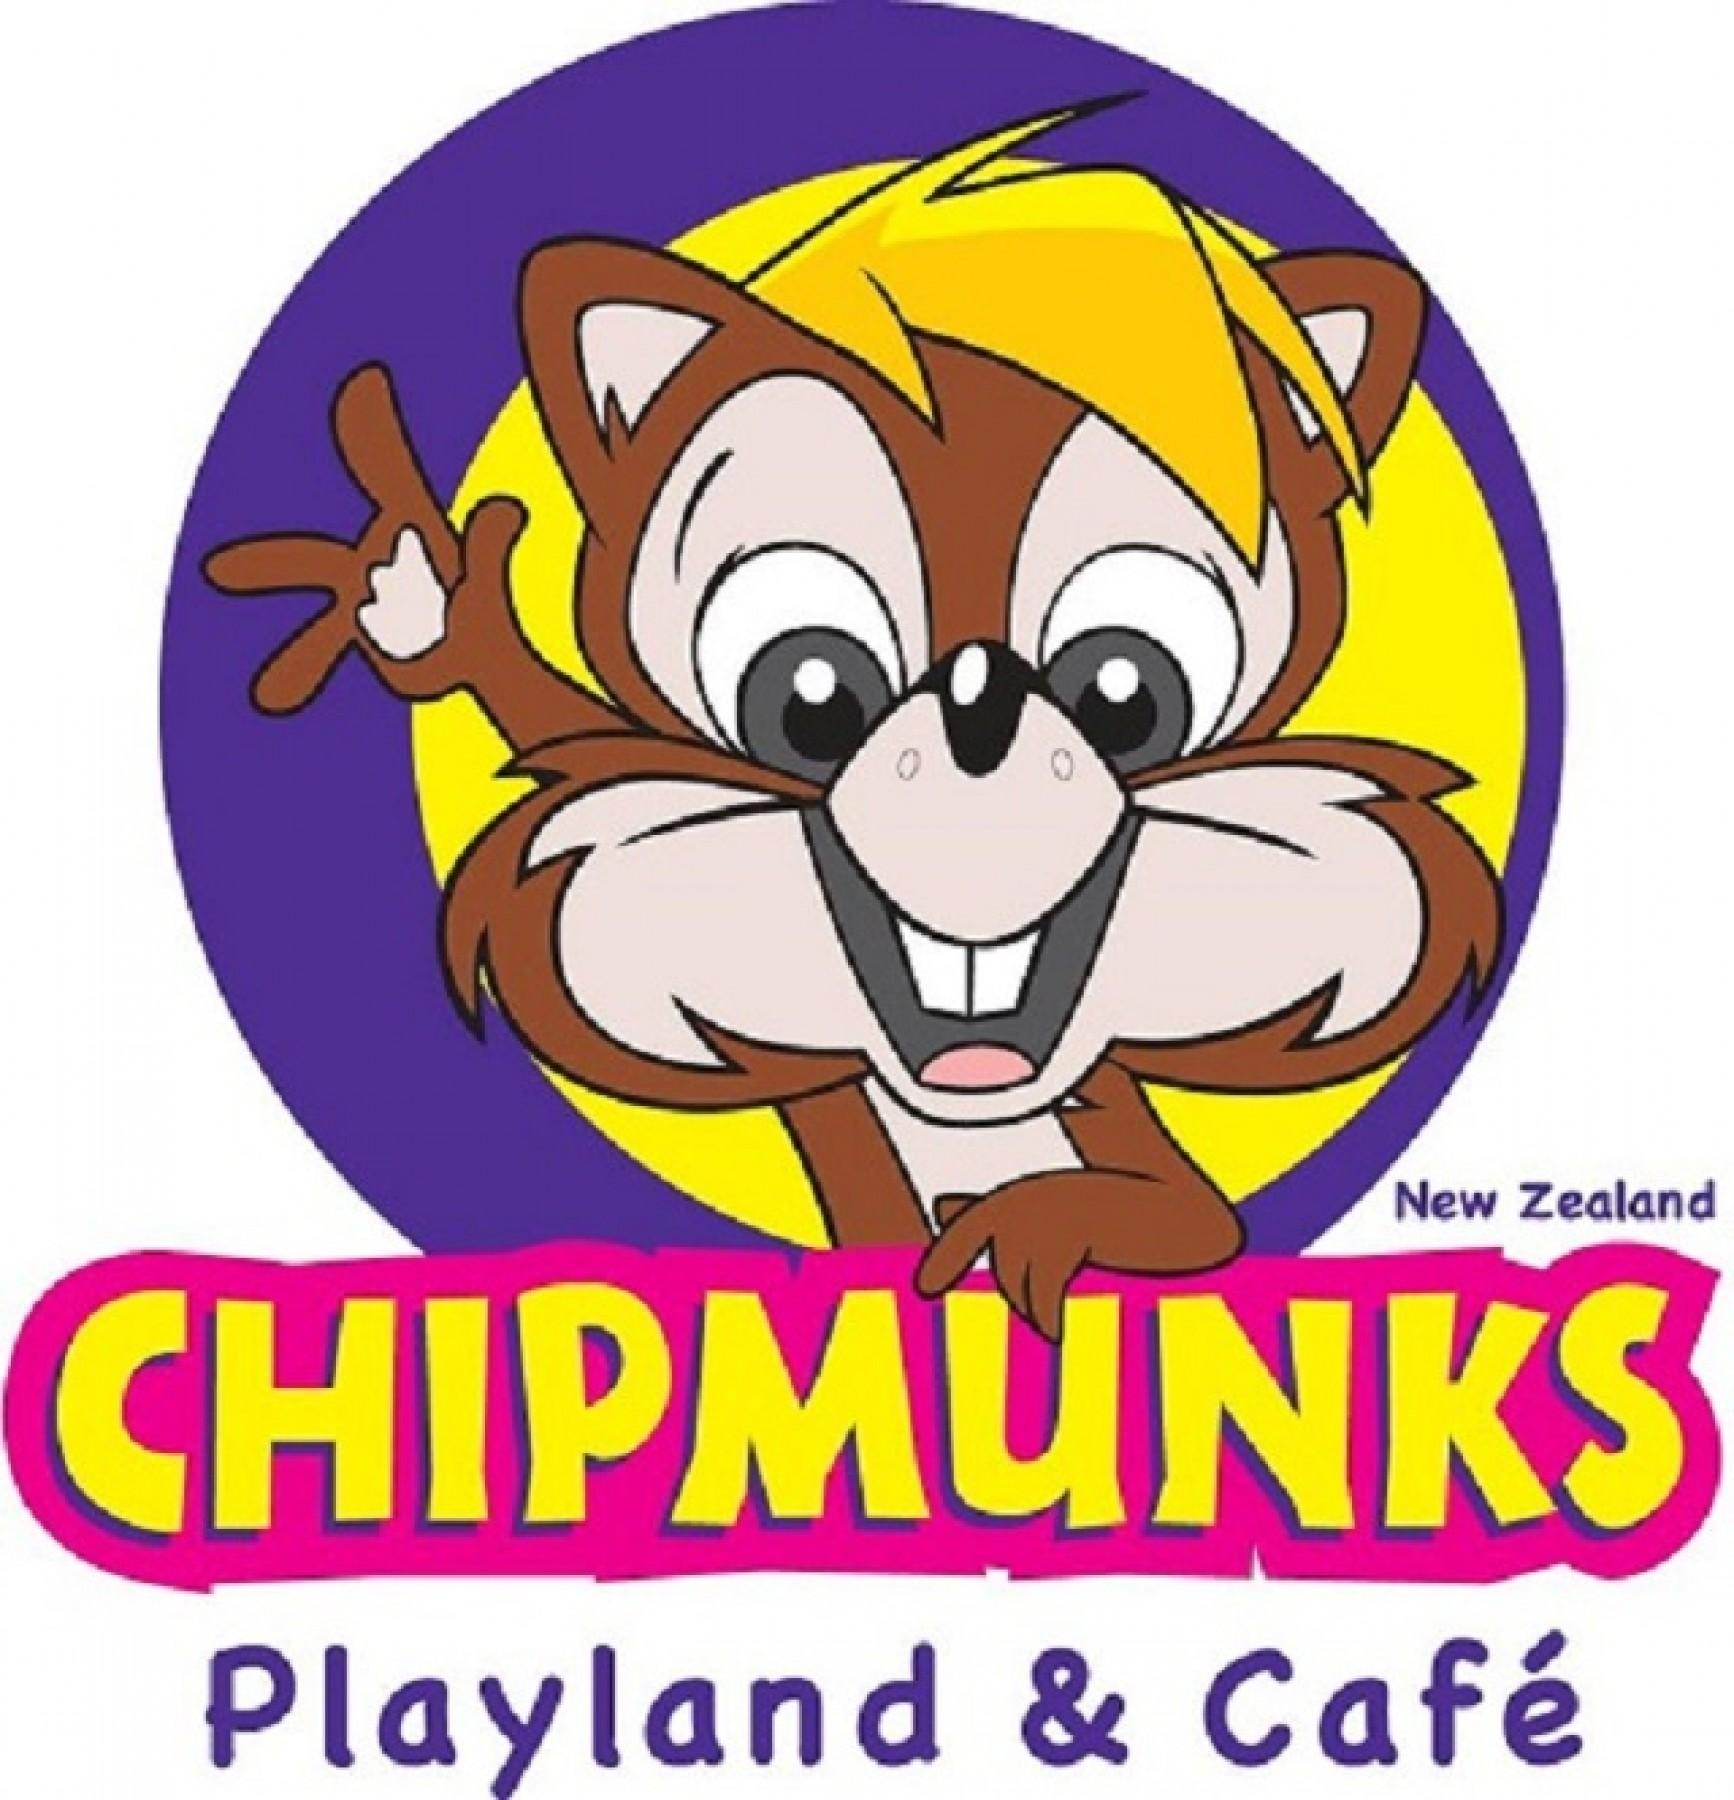 Children's Playland & Café Franchise  Chipmunks ...Business For Sale